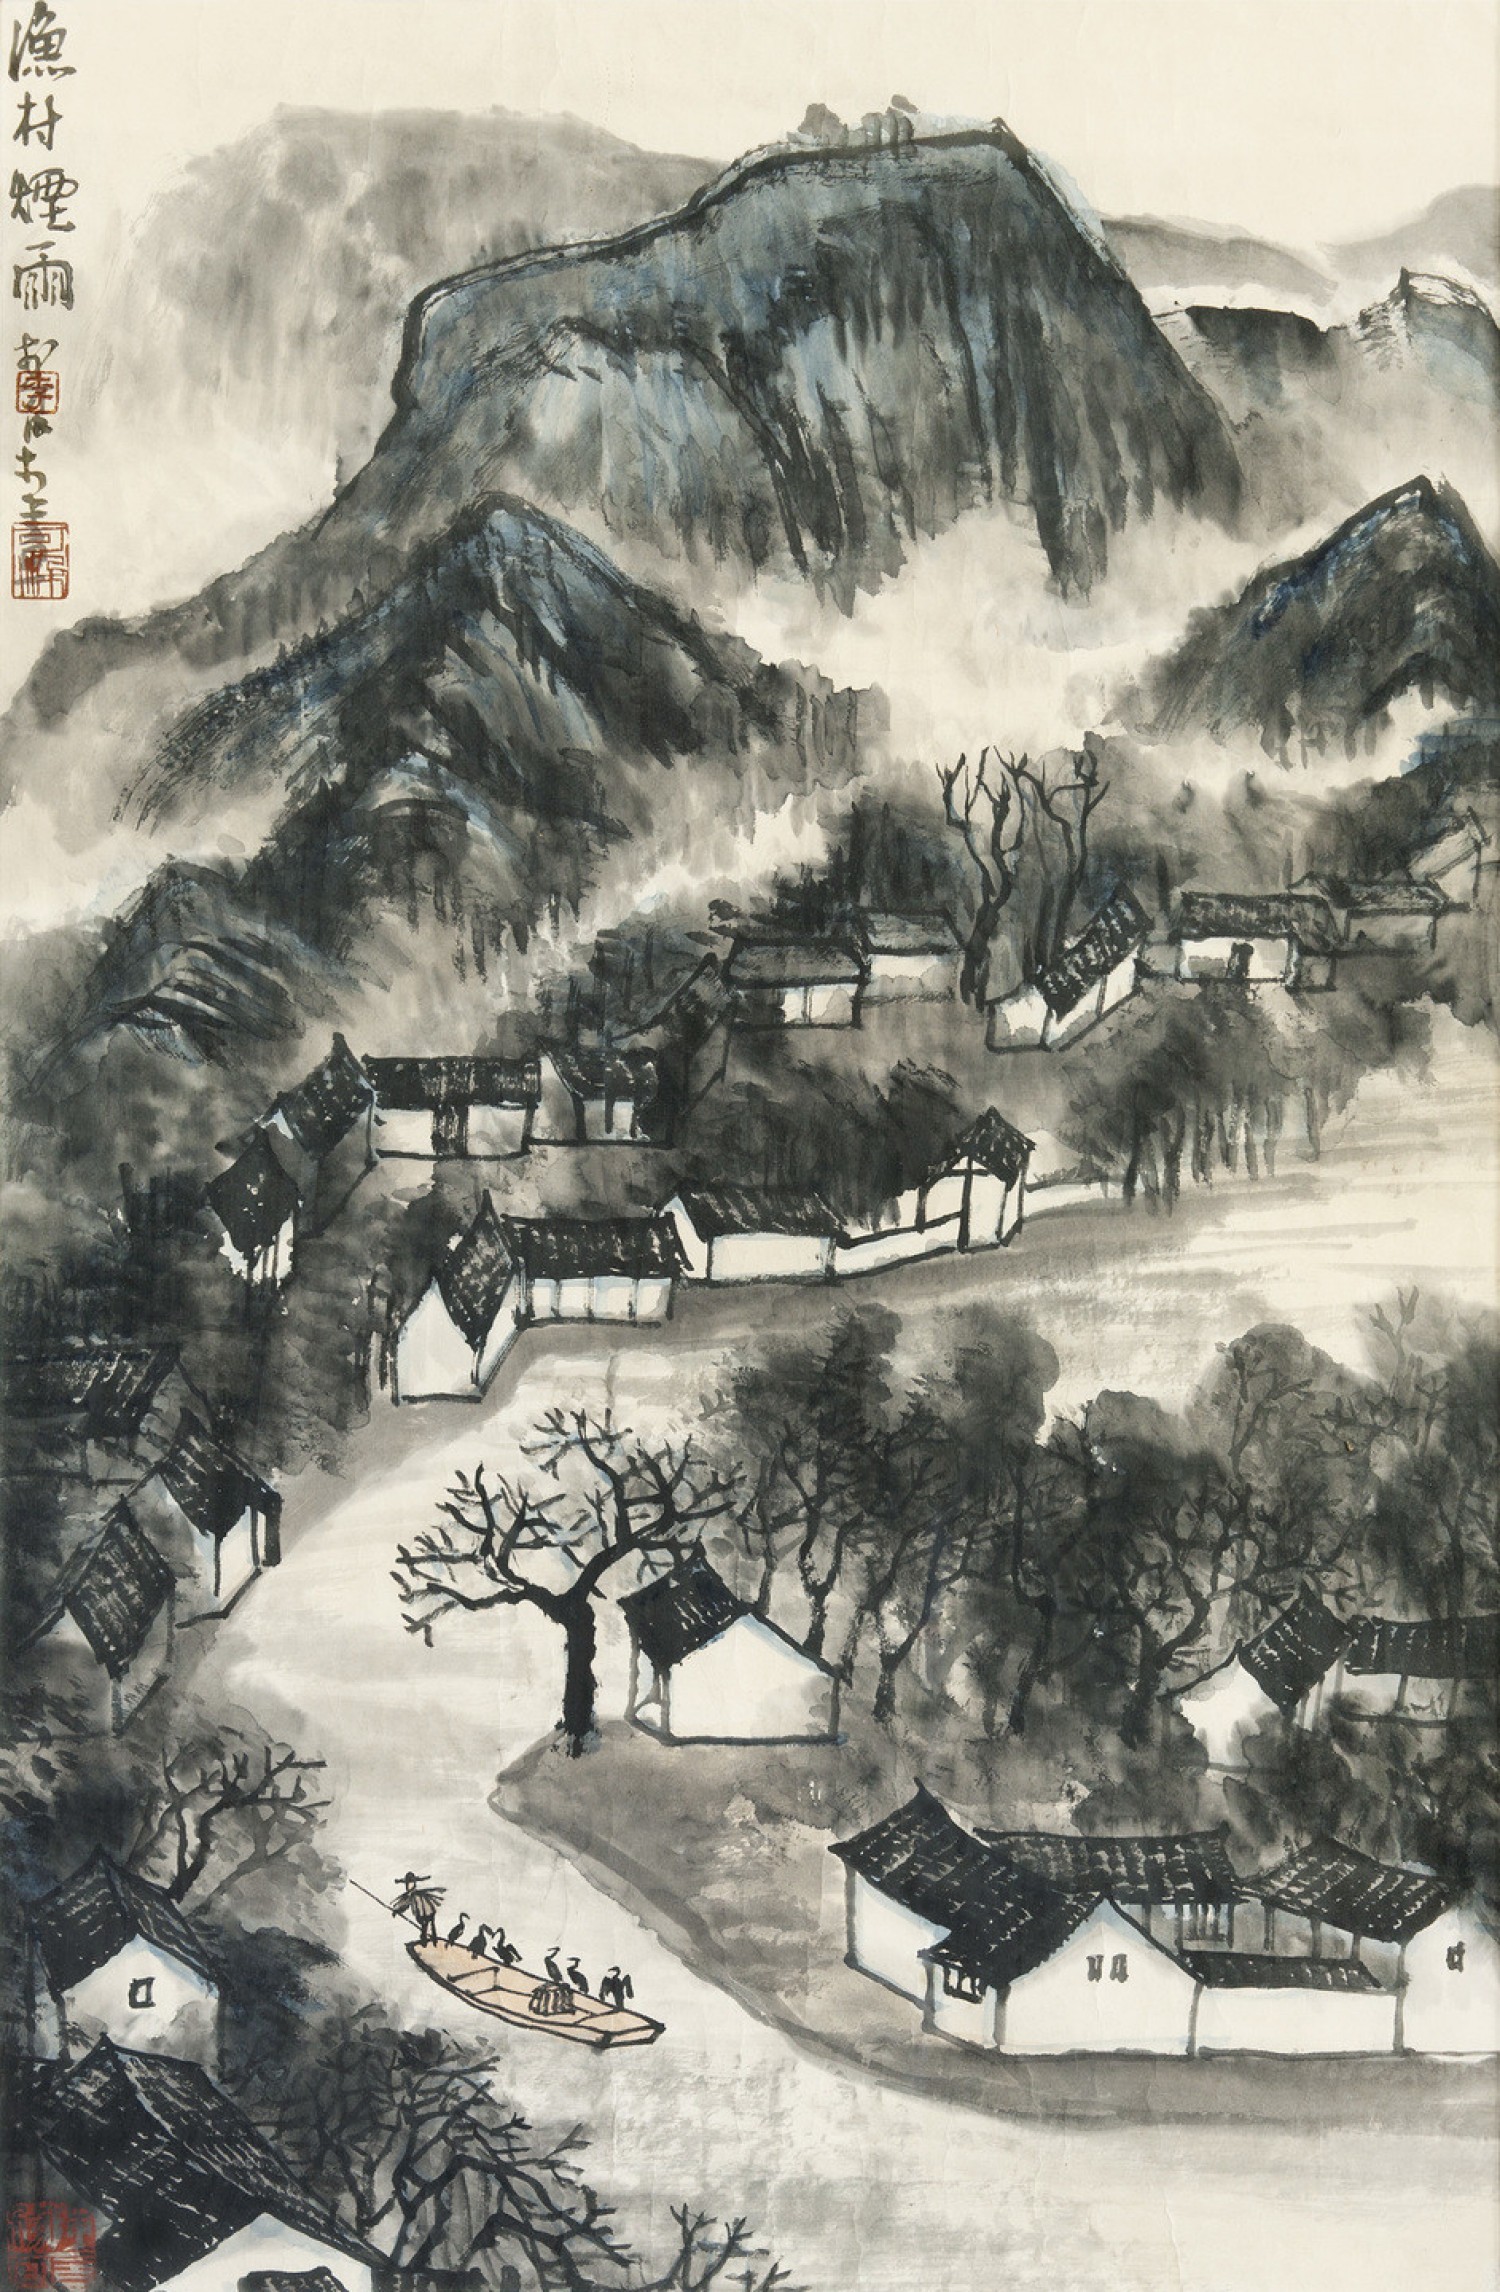 Li Kche-žan:Rybářská vesnice v mlze a dešti, 1955, tuš a barvy na papíře, 80 x 52 cm,  cena: 13 750 000 Kč,  Arcimboldo 11. 4. 2021